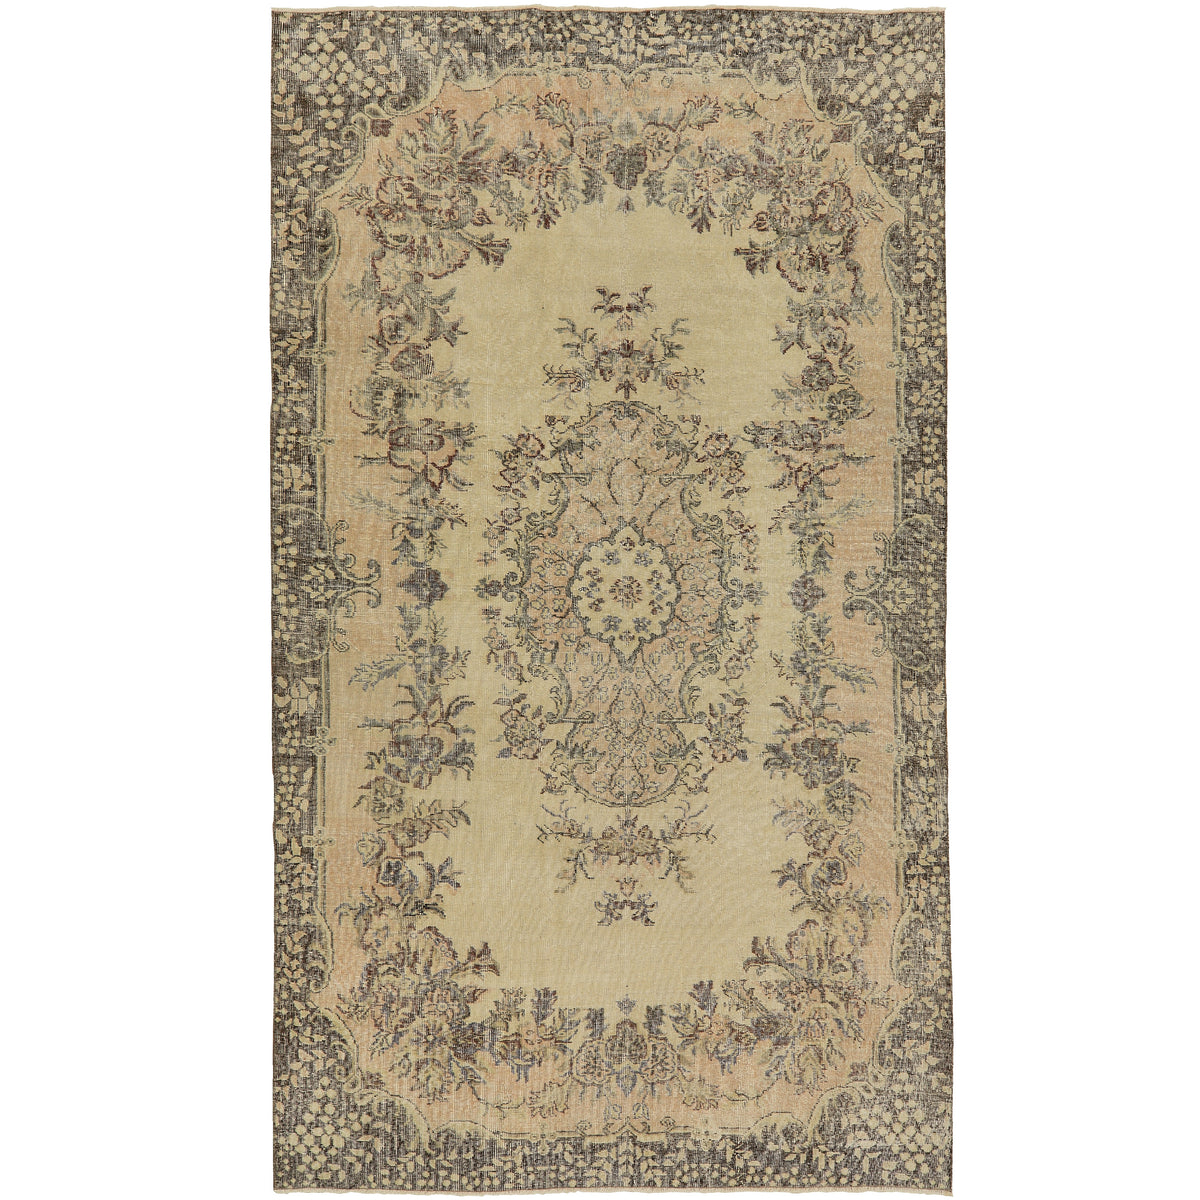 Moriah: Timeless Vintage Turkish Carpet